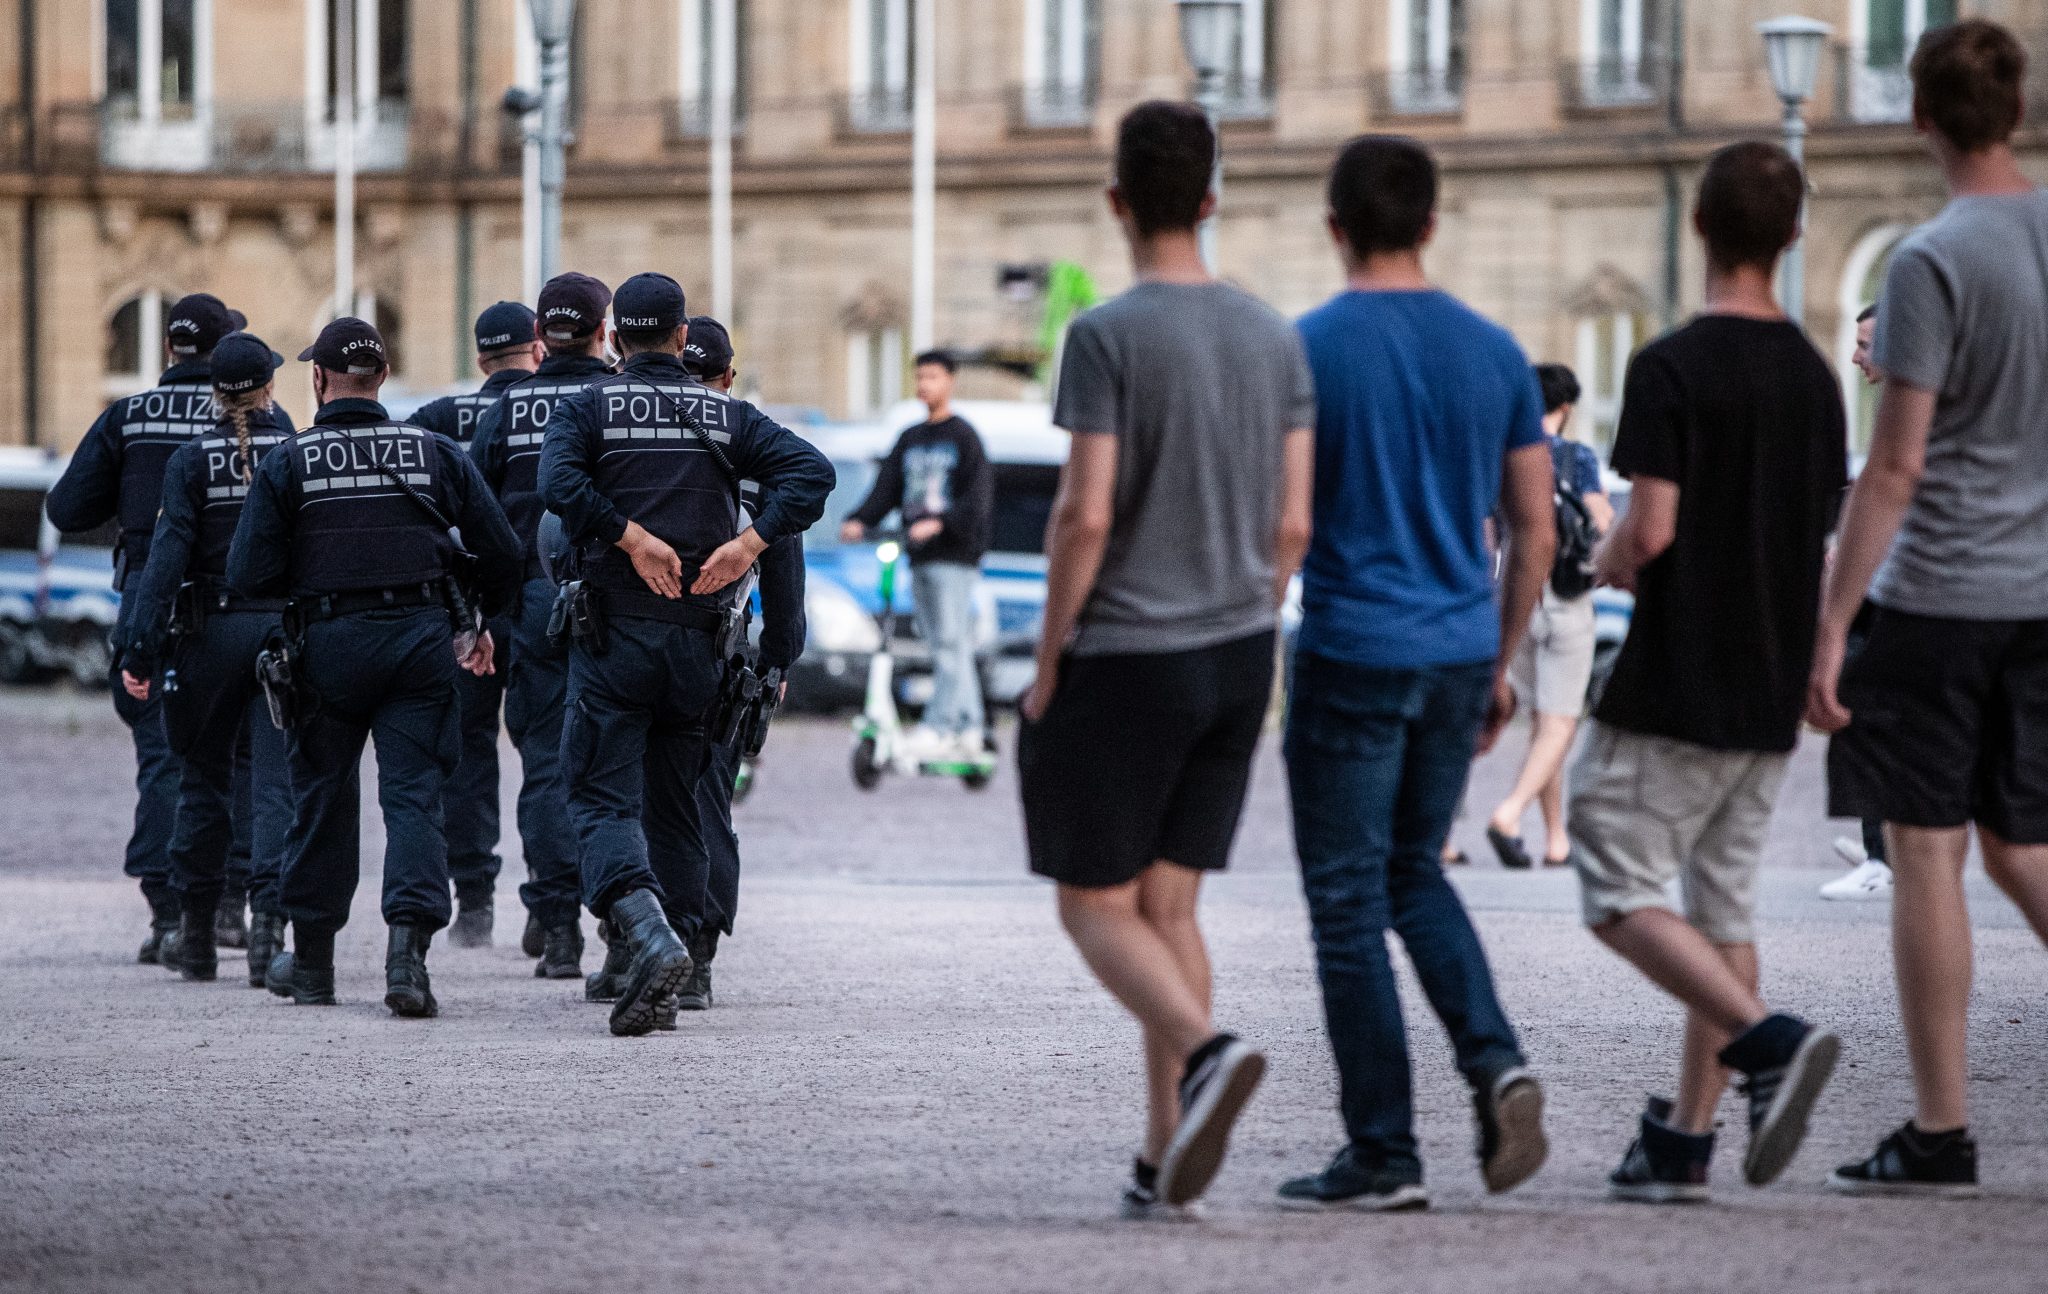 Polizeipräsenz in Stuttgarter Innenstadt: Kontrolliert verstärkt Jugendliche Foto: picture alliance/Christoph Schmidt/dpa